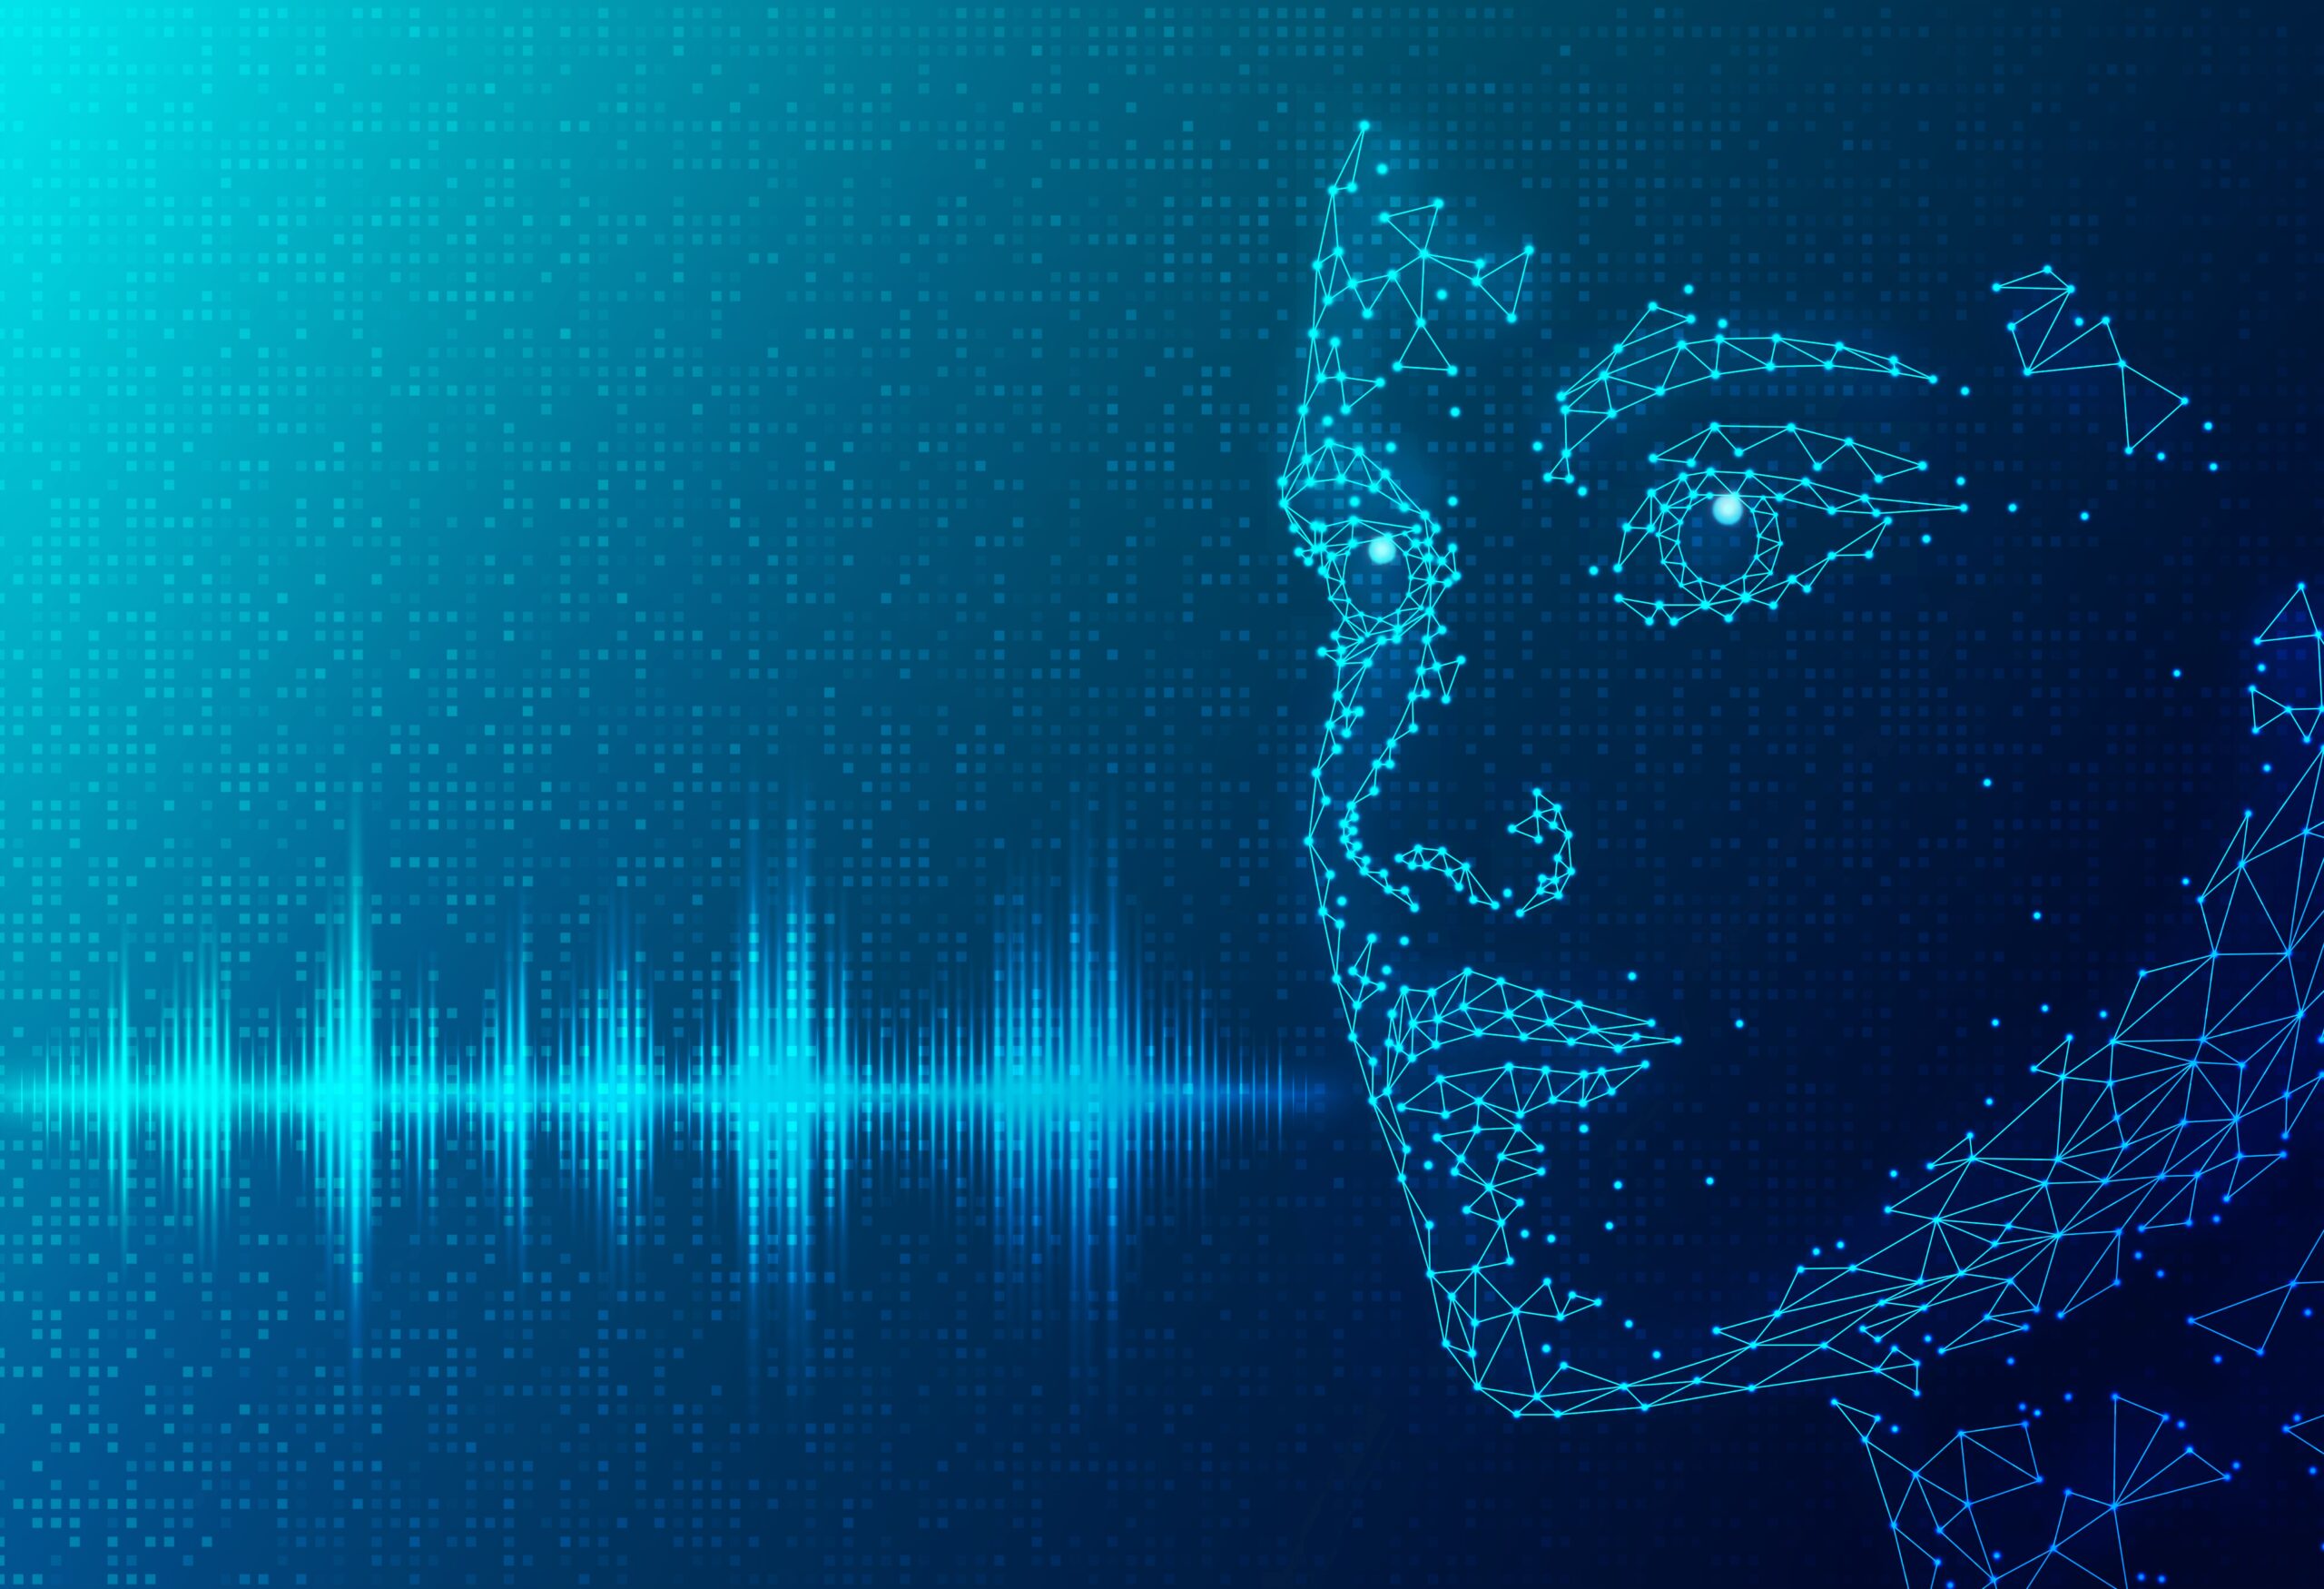 Personalización de la experiencia de aprendizaje con AI Voice Over Generator - SmartData Collective